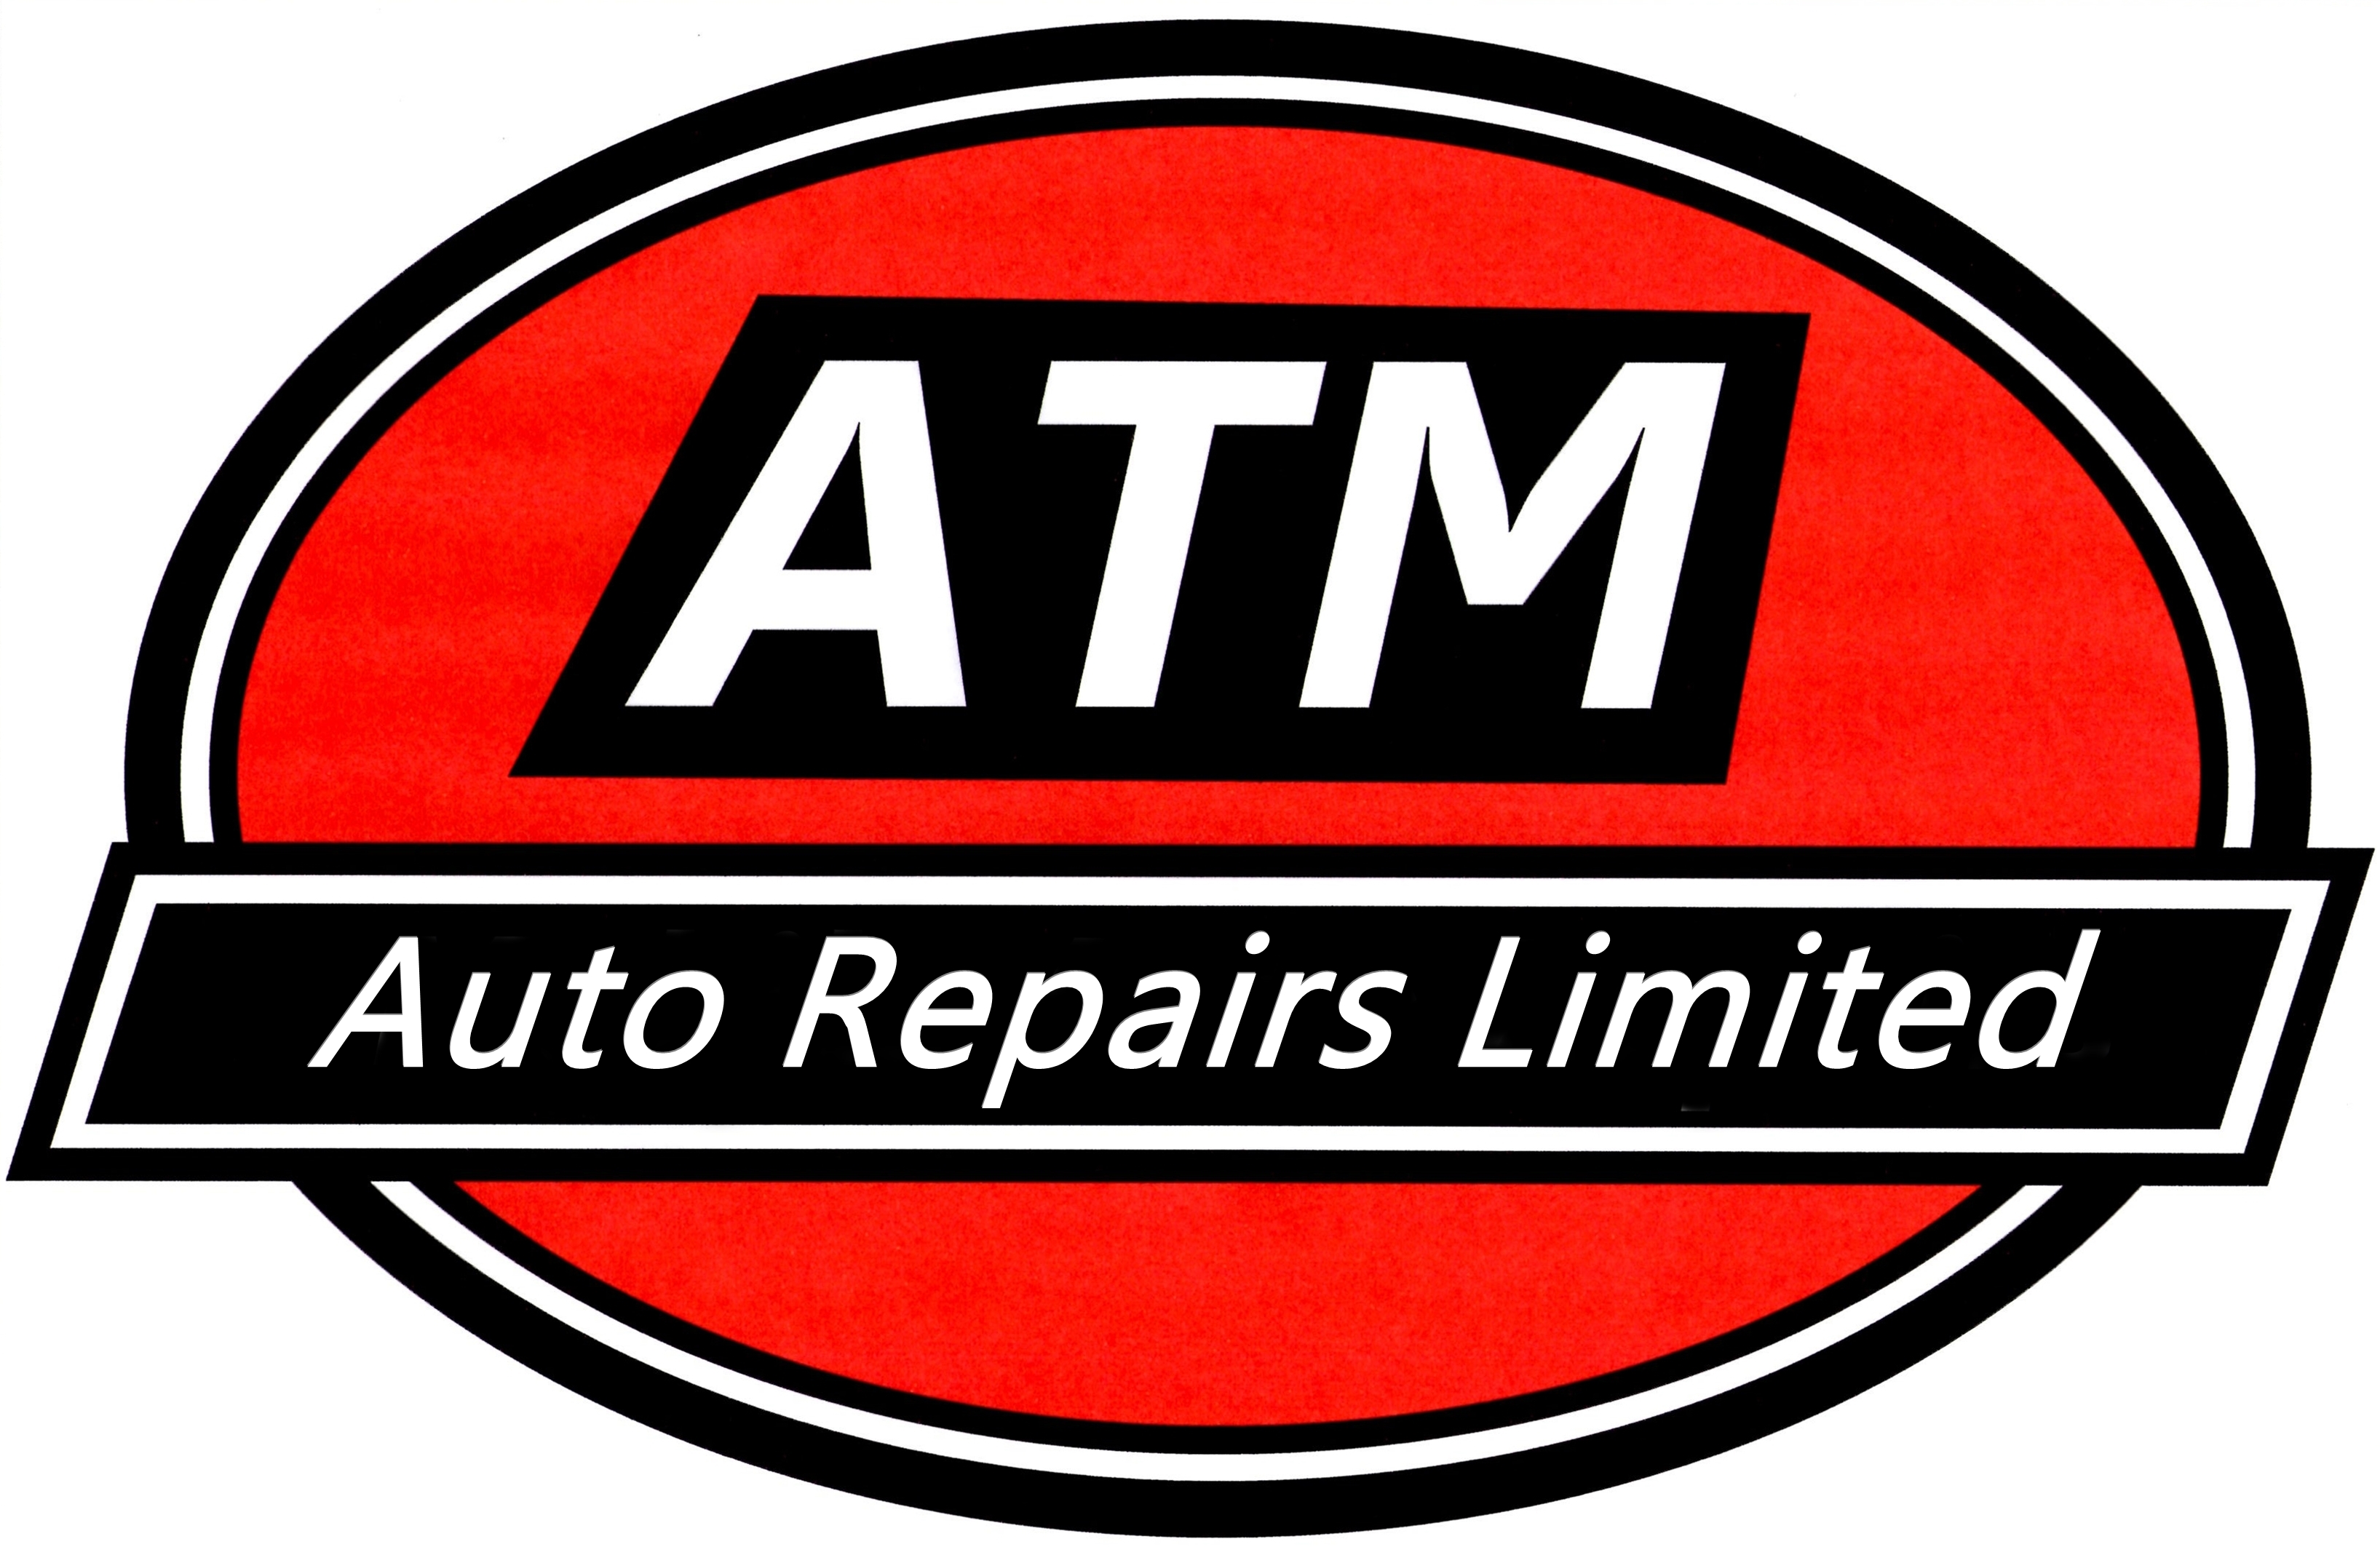 ATM Auto Repairs Ltd